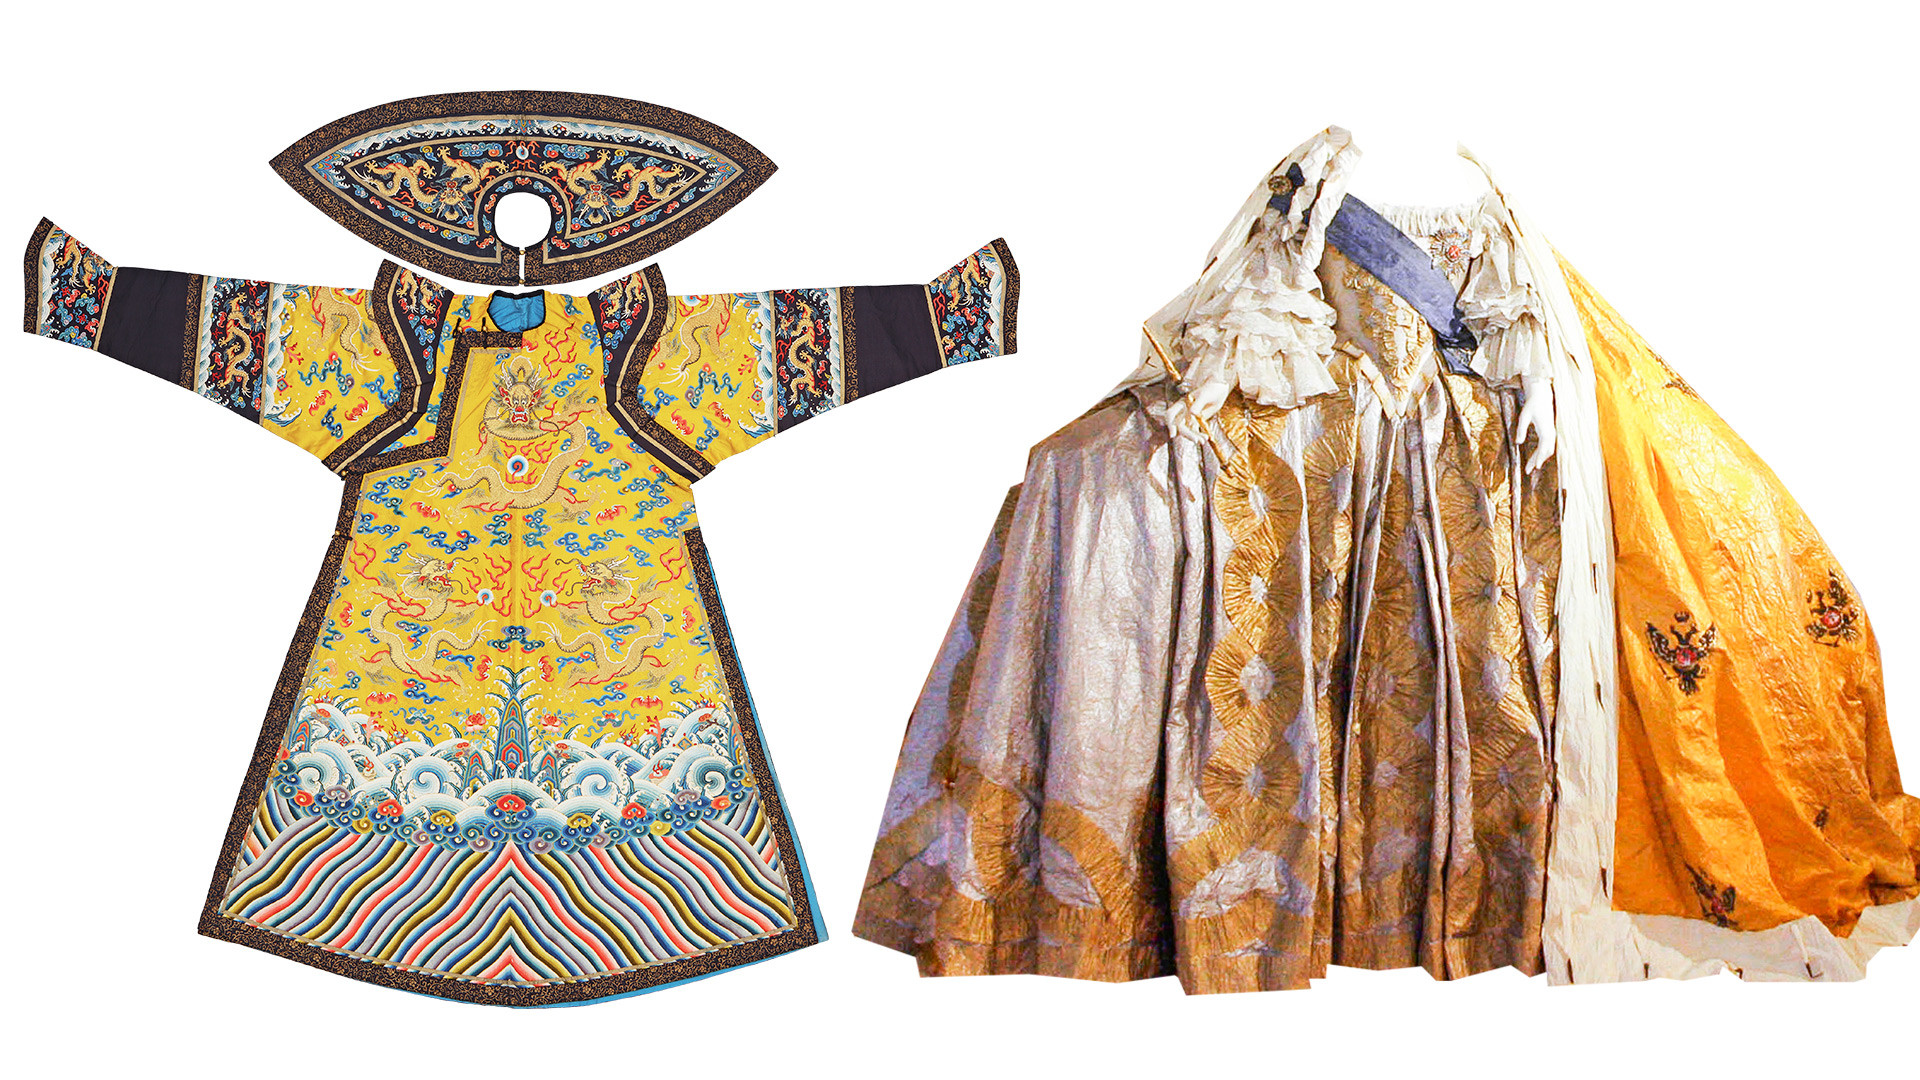 Слева: Парадное одеяние императрицы – халат чаопао. Эпоха Цин, правление Цяньлун (1736–1796). Справа: Коронационное платье Елизаветы Петровны